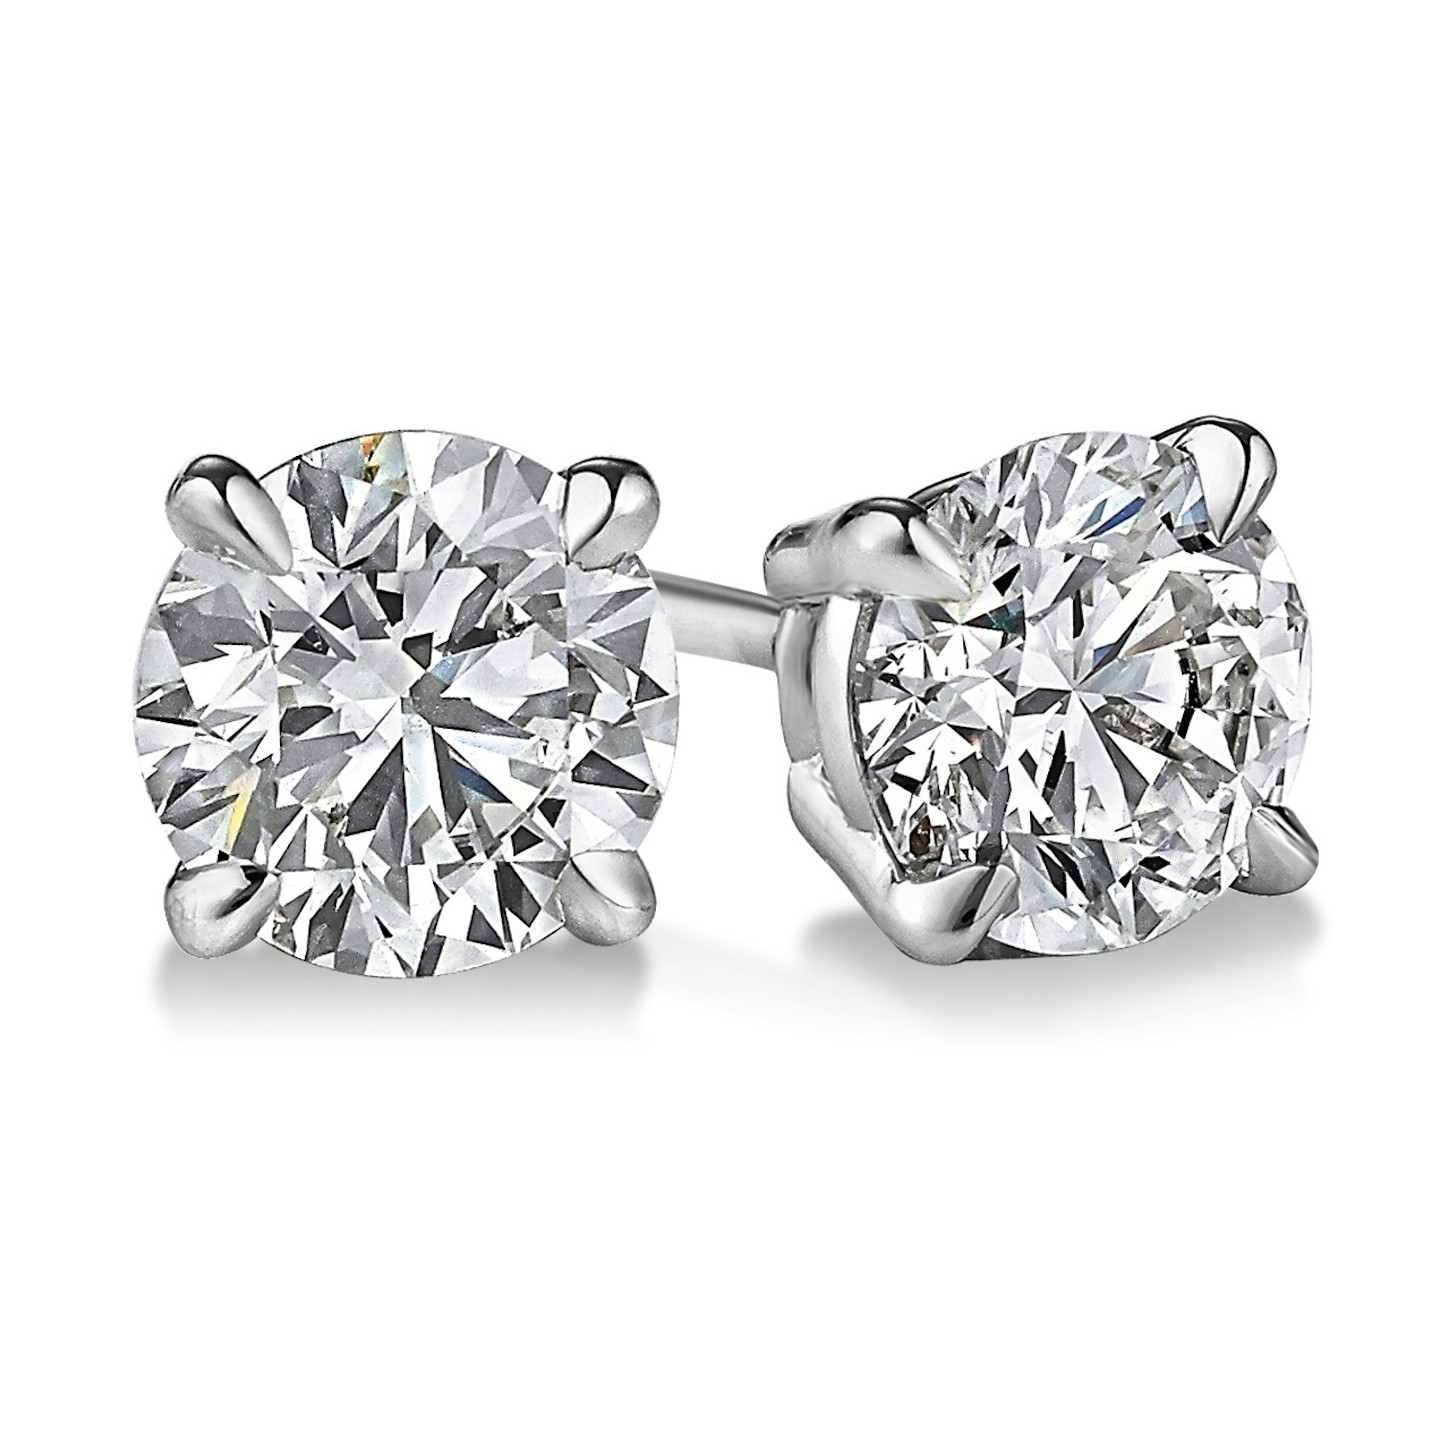 Diamond Ear Rings
 EGL USA Certified Round 1 08 CTW Diamond Stud Earrings in